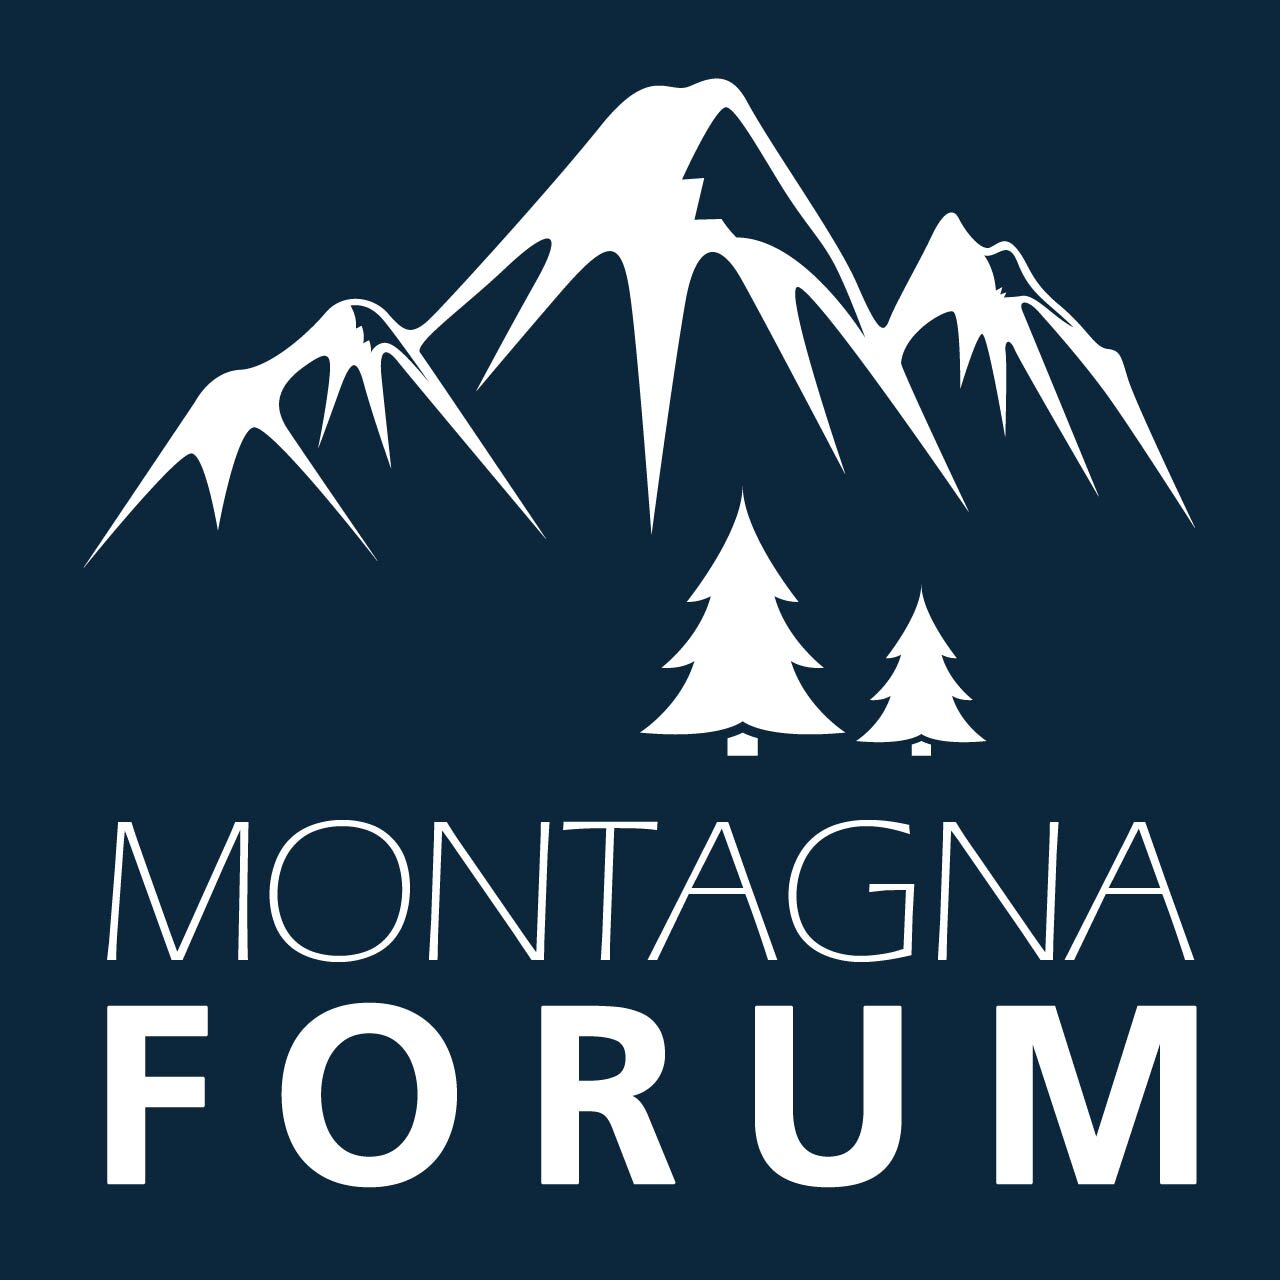 L'account Twitter di #Montagna Forum, il forum dove si parla di #montagne, dalle Alpi agli Appenini, dalle Ande al Himalaya. Appassionati di montagna seguiteci